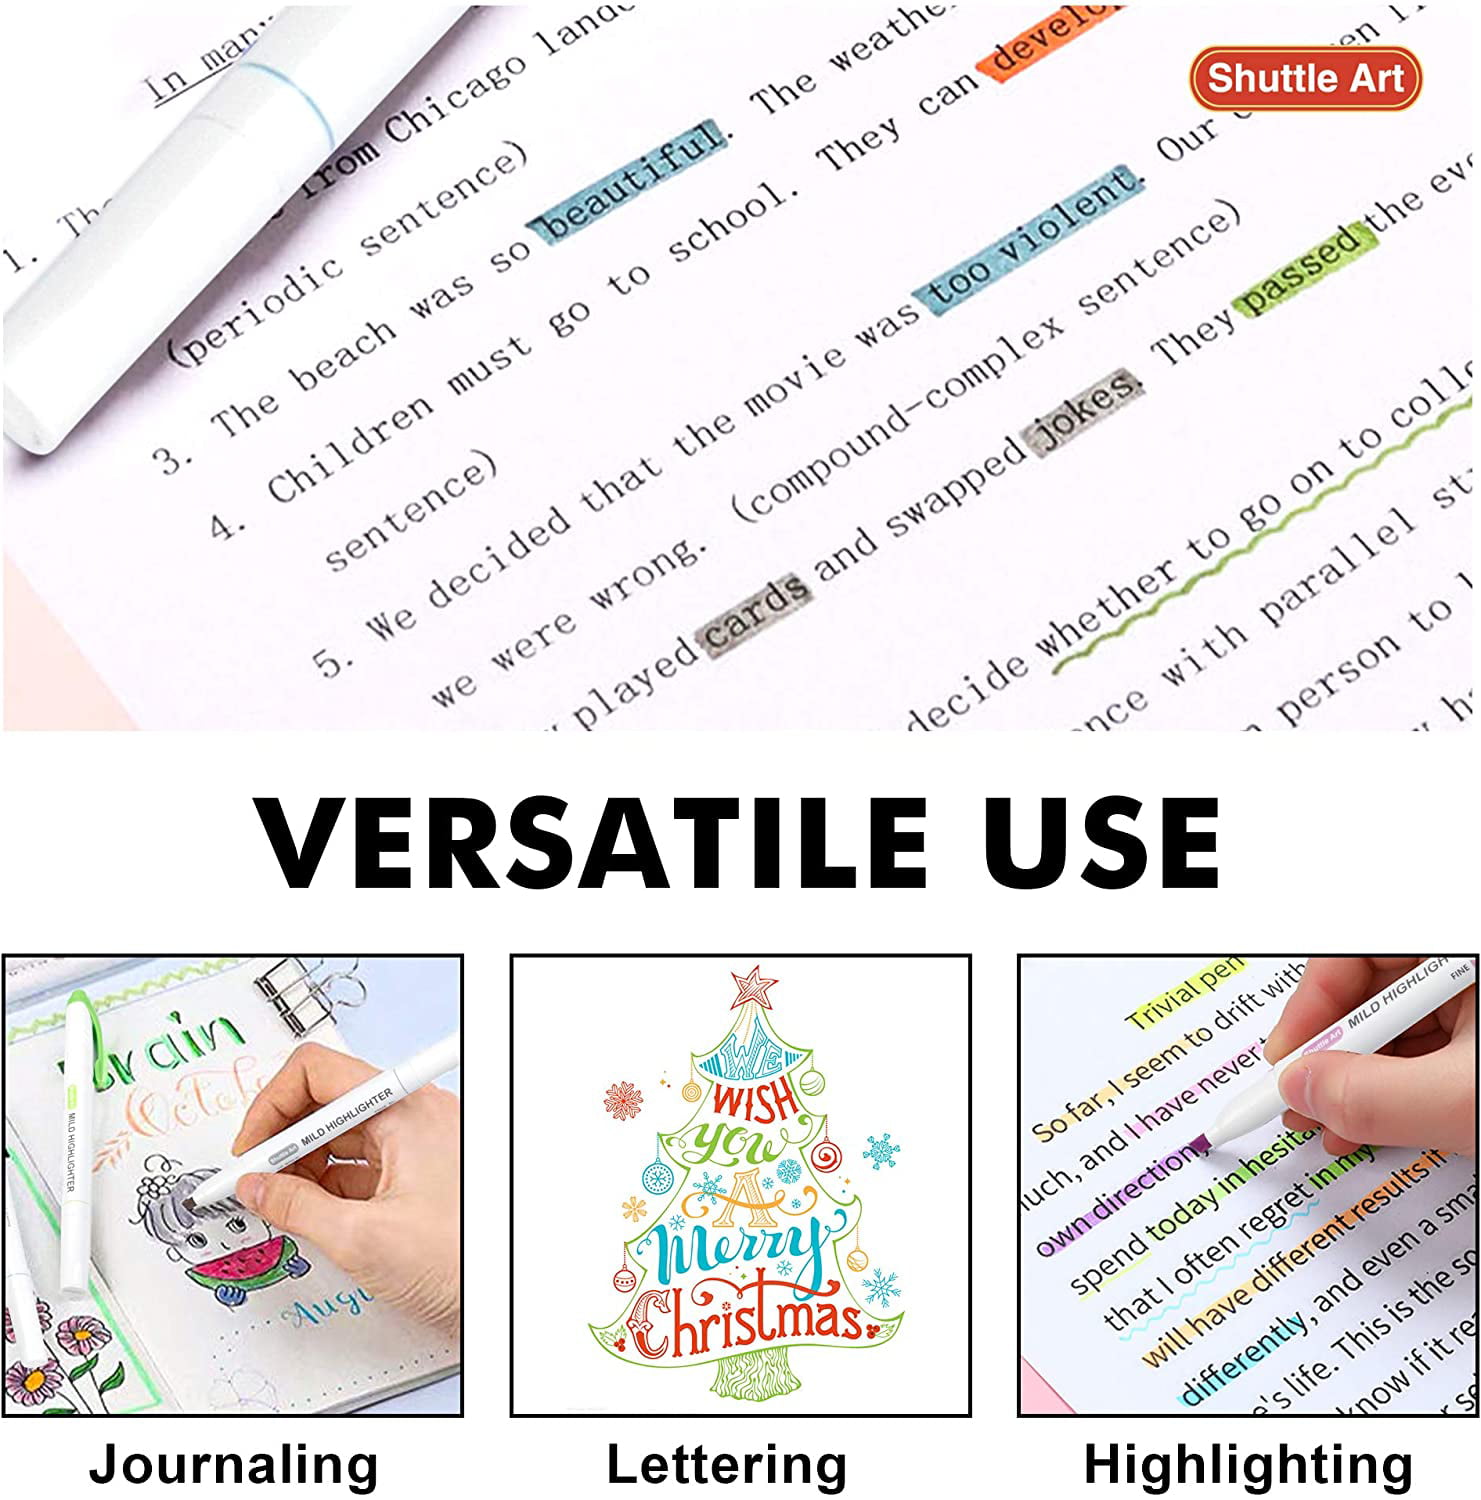 Gradual Cream Color Highlighter Pen Setstudent Dual Tip Hightlights Mild  Color Spot Liner Marker Study School Office Supplies 